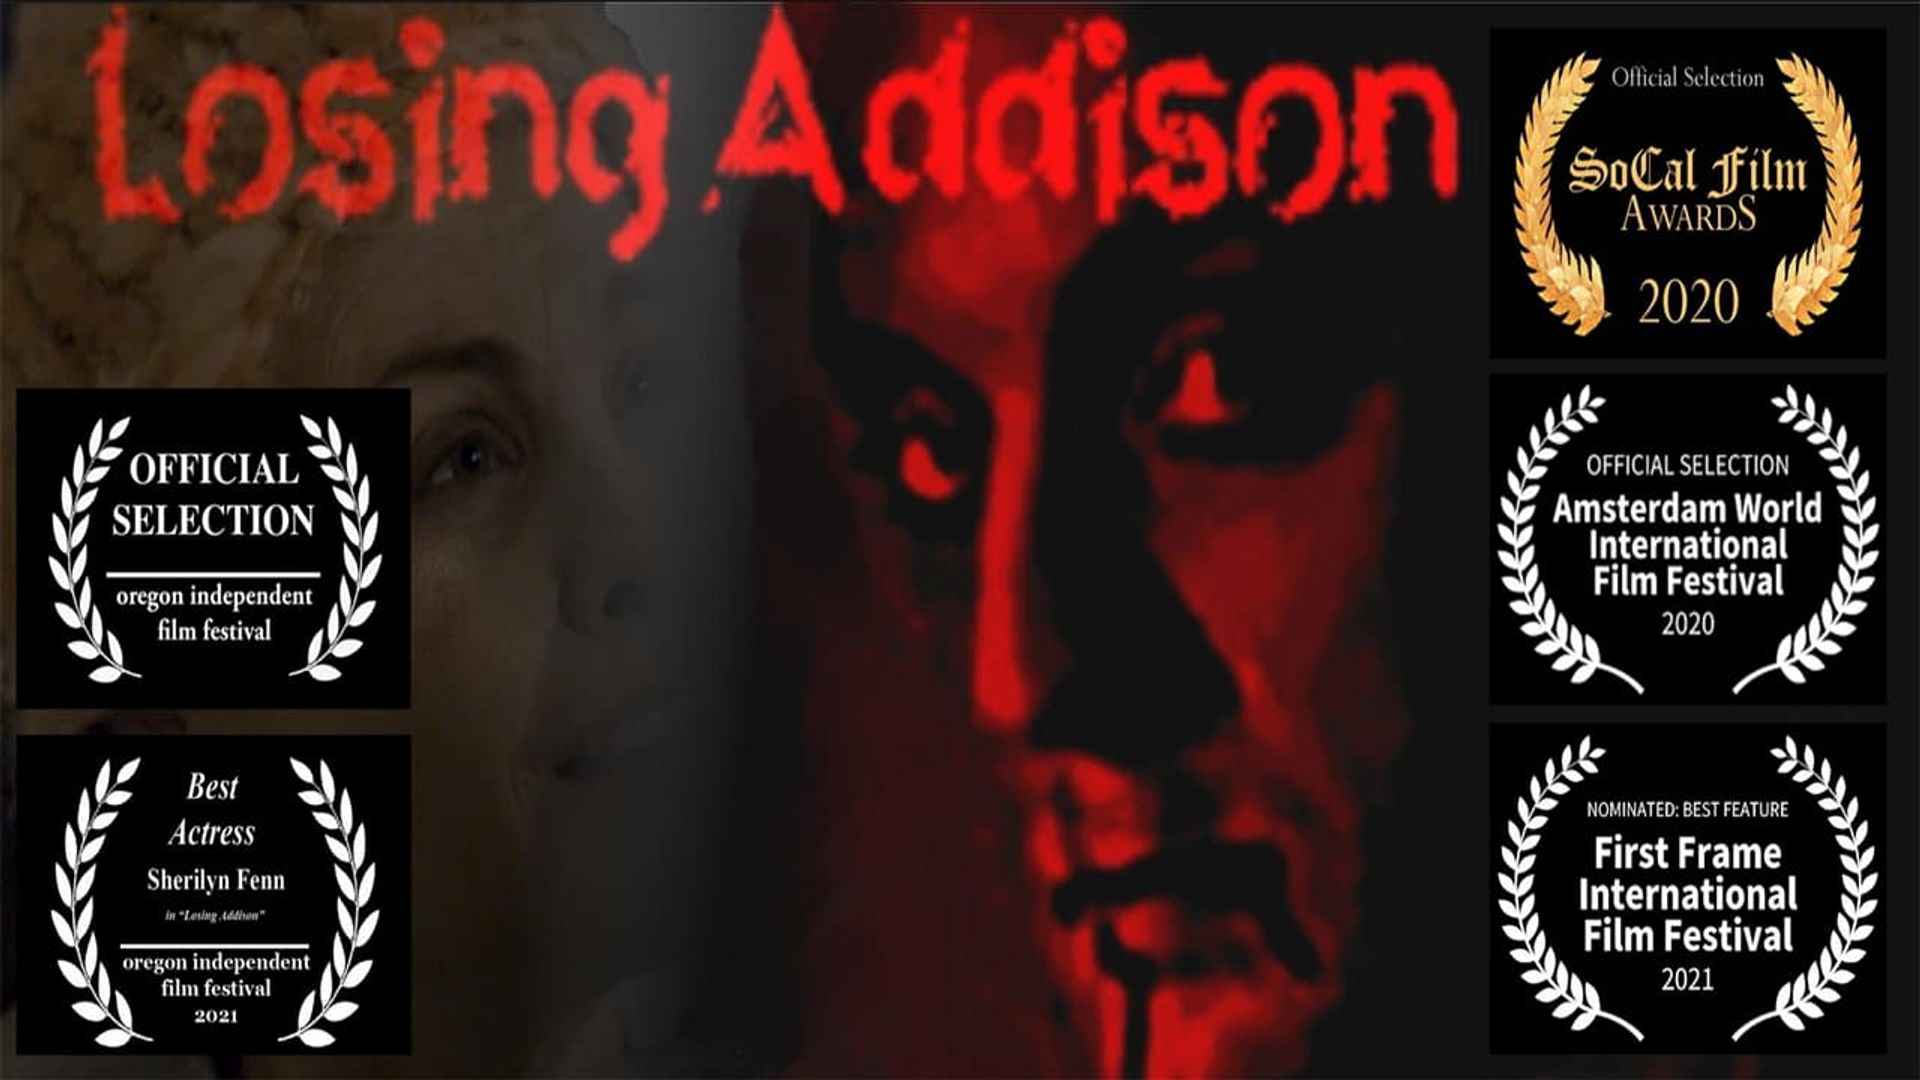 Losing Addison background